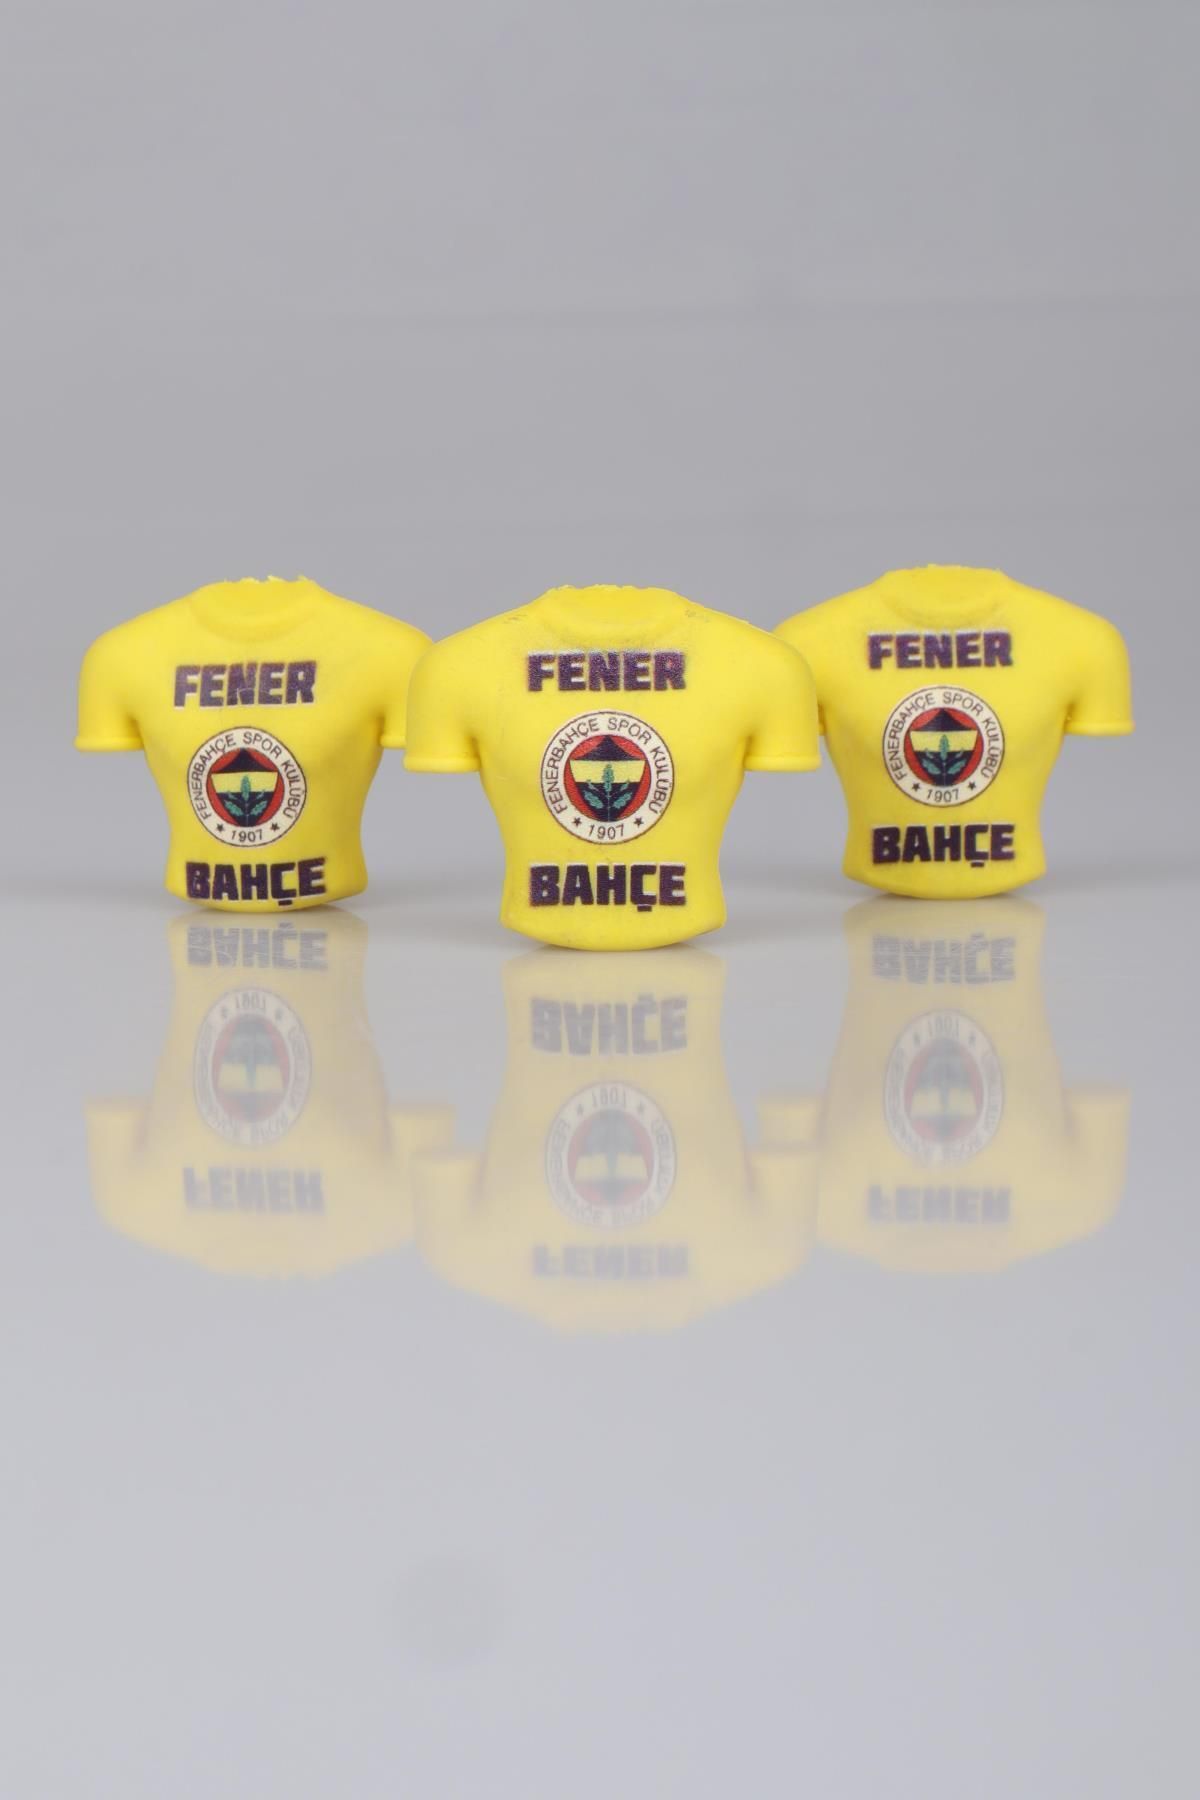 Fenerbahçe LİSANSLI FENERBAHÇE 2'Lİ FORMA TASARIM SİLGİ (KALEME TAKILABİLİR)